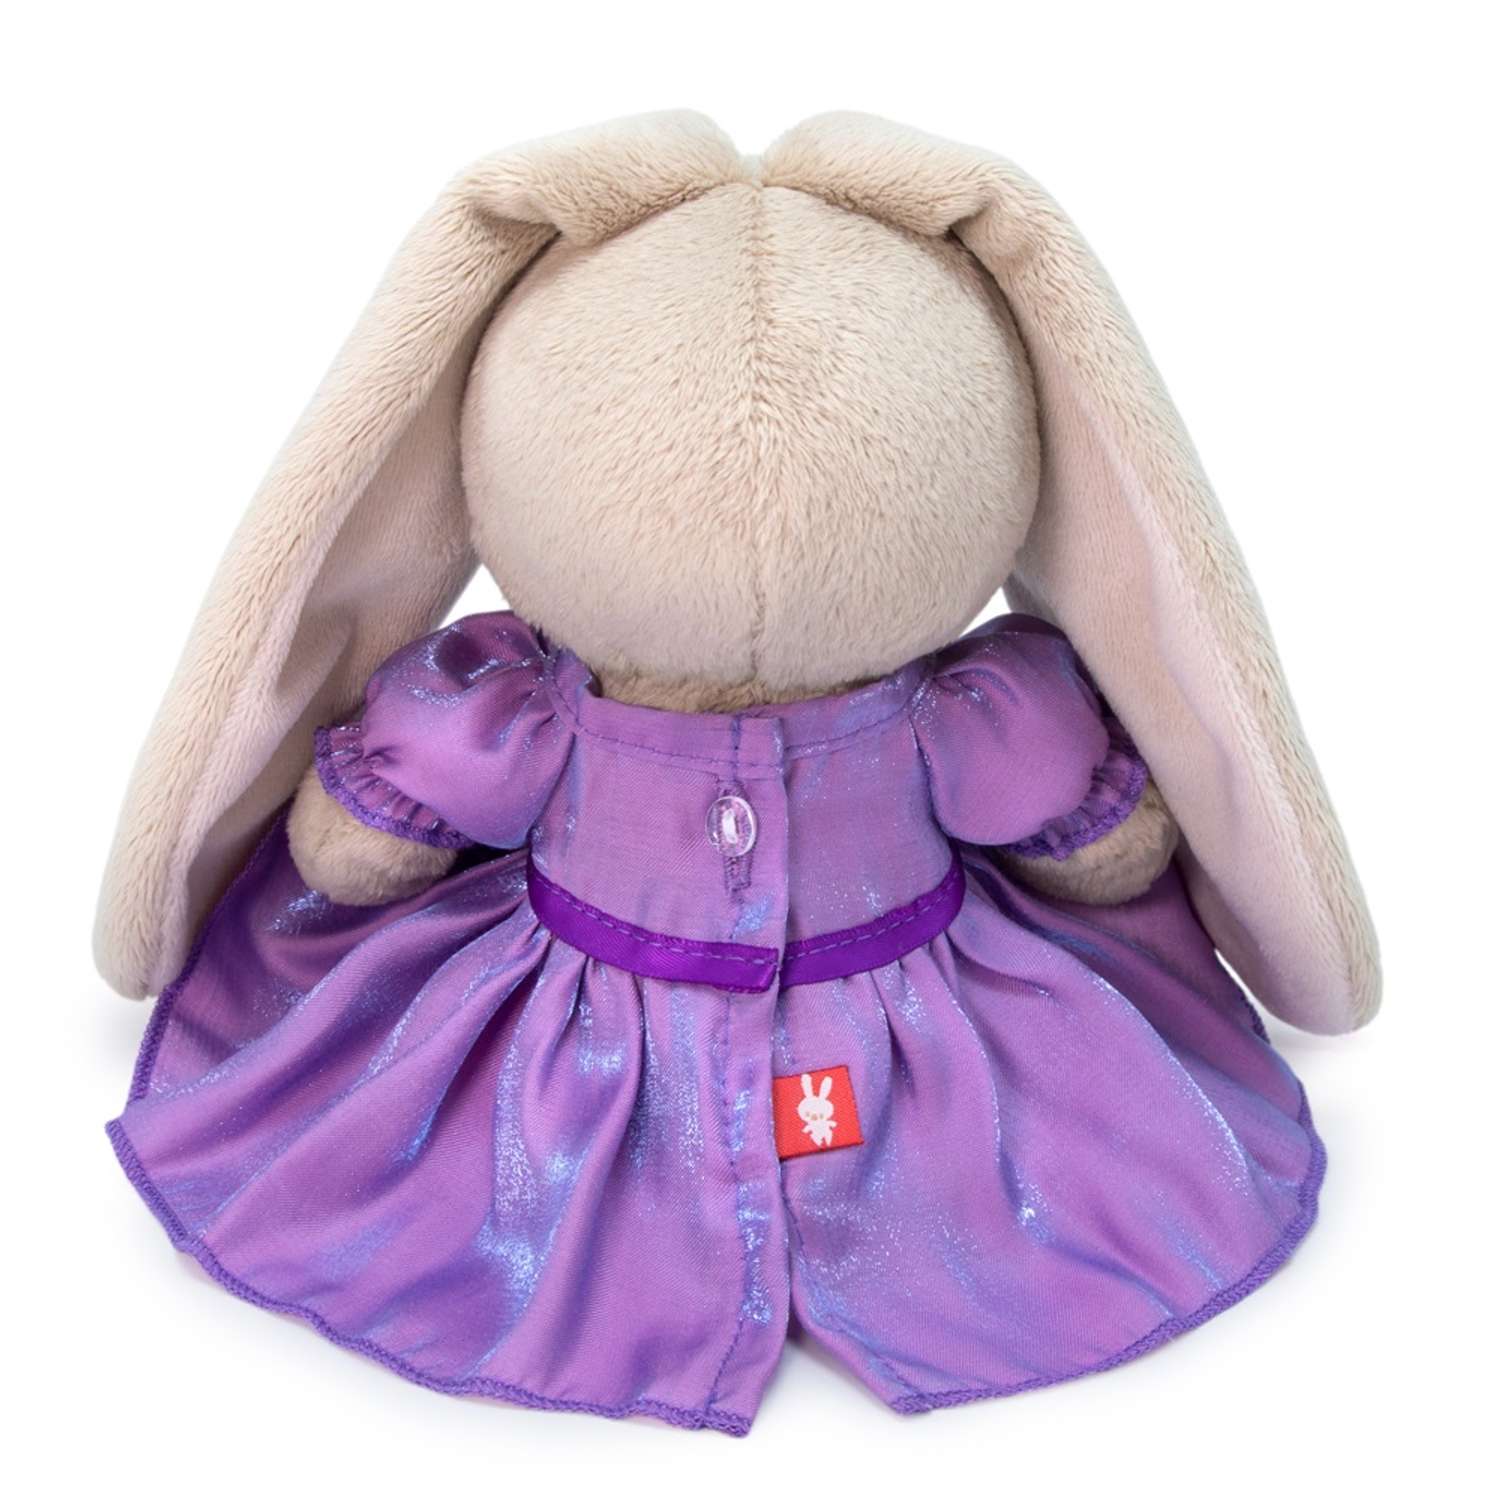 Мягкая игрушка BUDI BASA Зайка Ми в сиреневом платье с блеском 15 см SidX-395 - фото 3